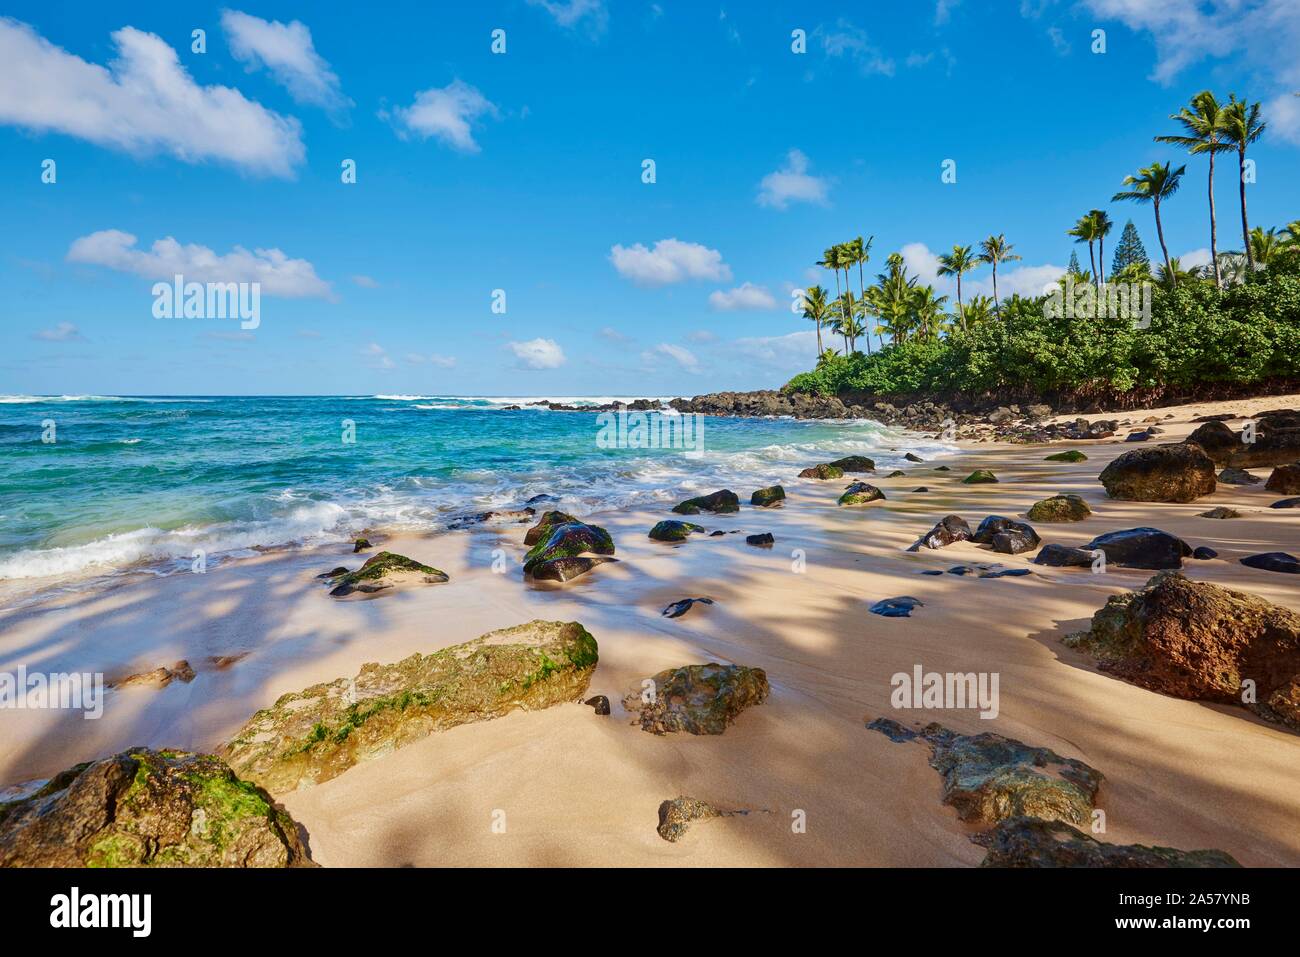 Laniakea Strand, Haleiwa, Hawaii Insel Oahu, O'ahu, Hawaii, Aloha State, USA Stockfoto